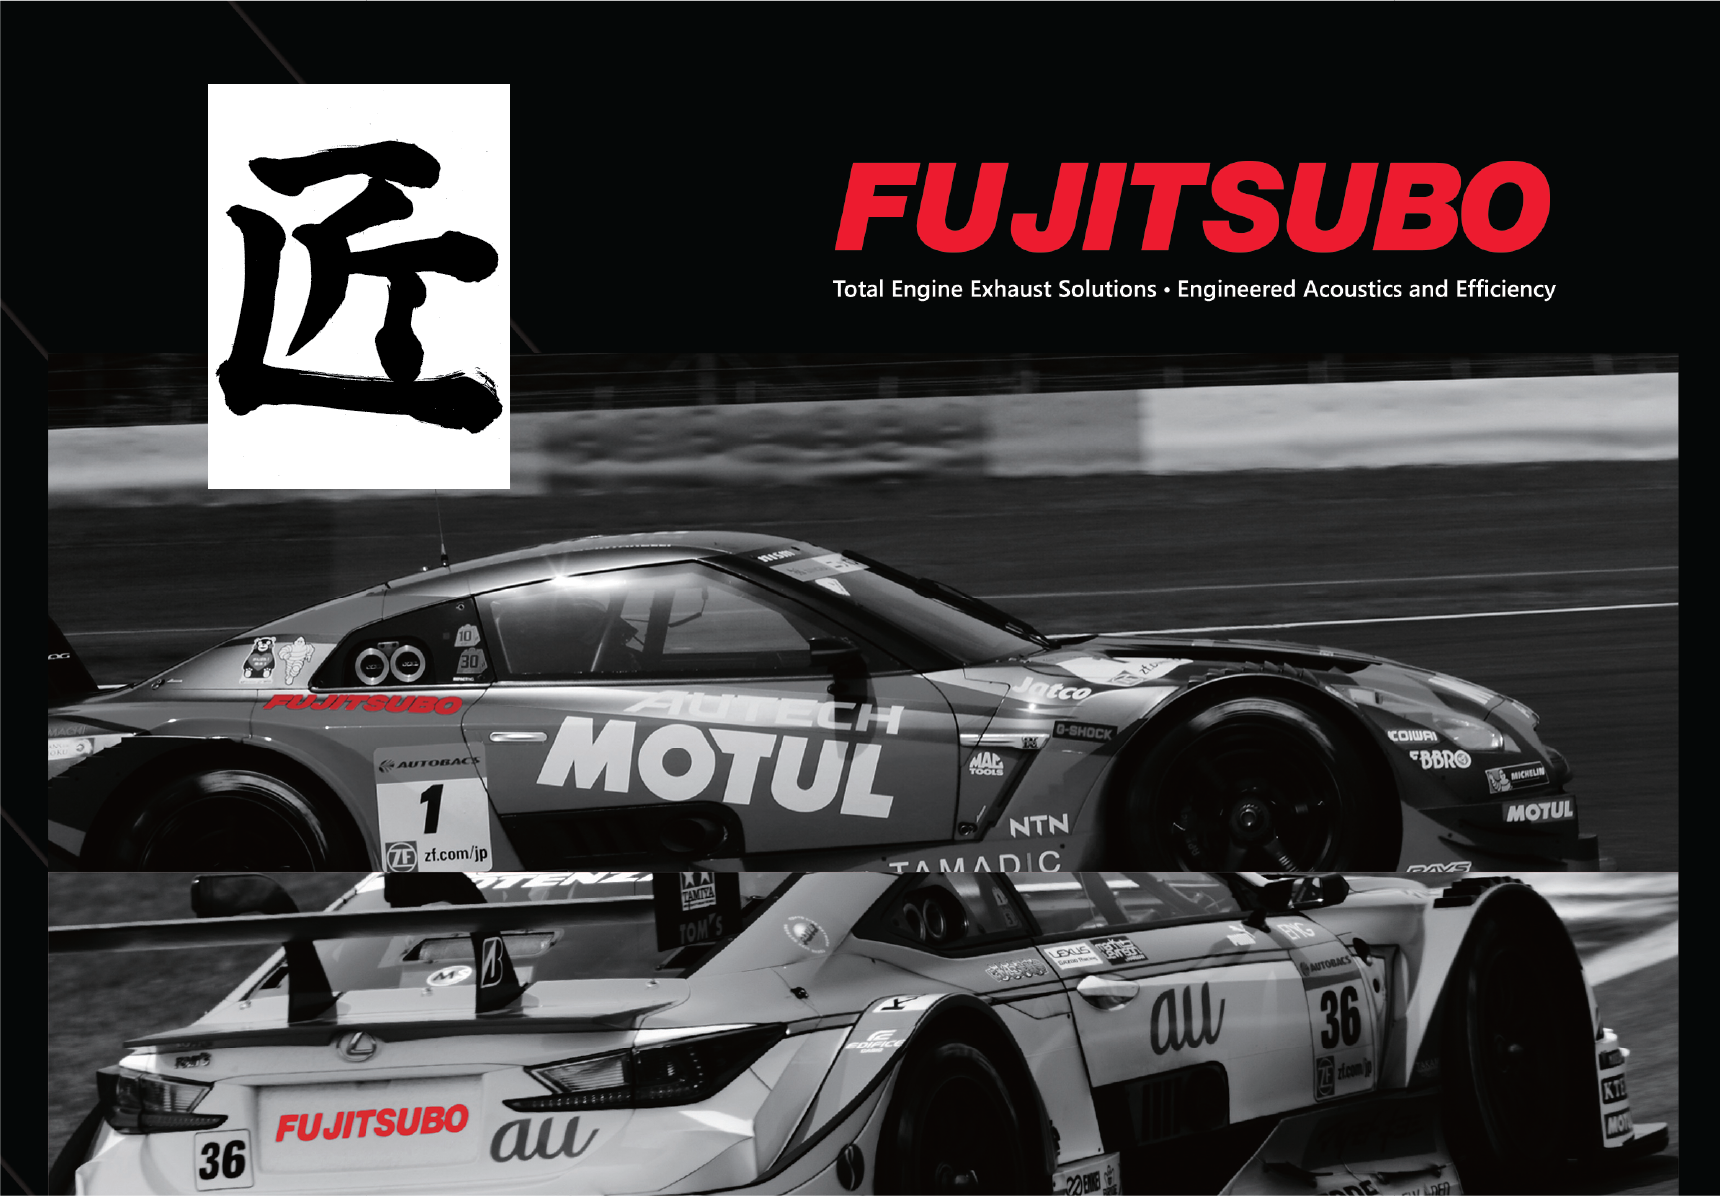 Fujitsubo Products